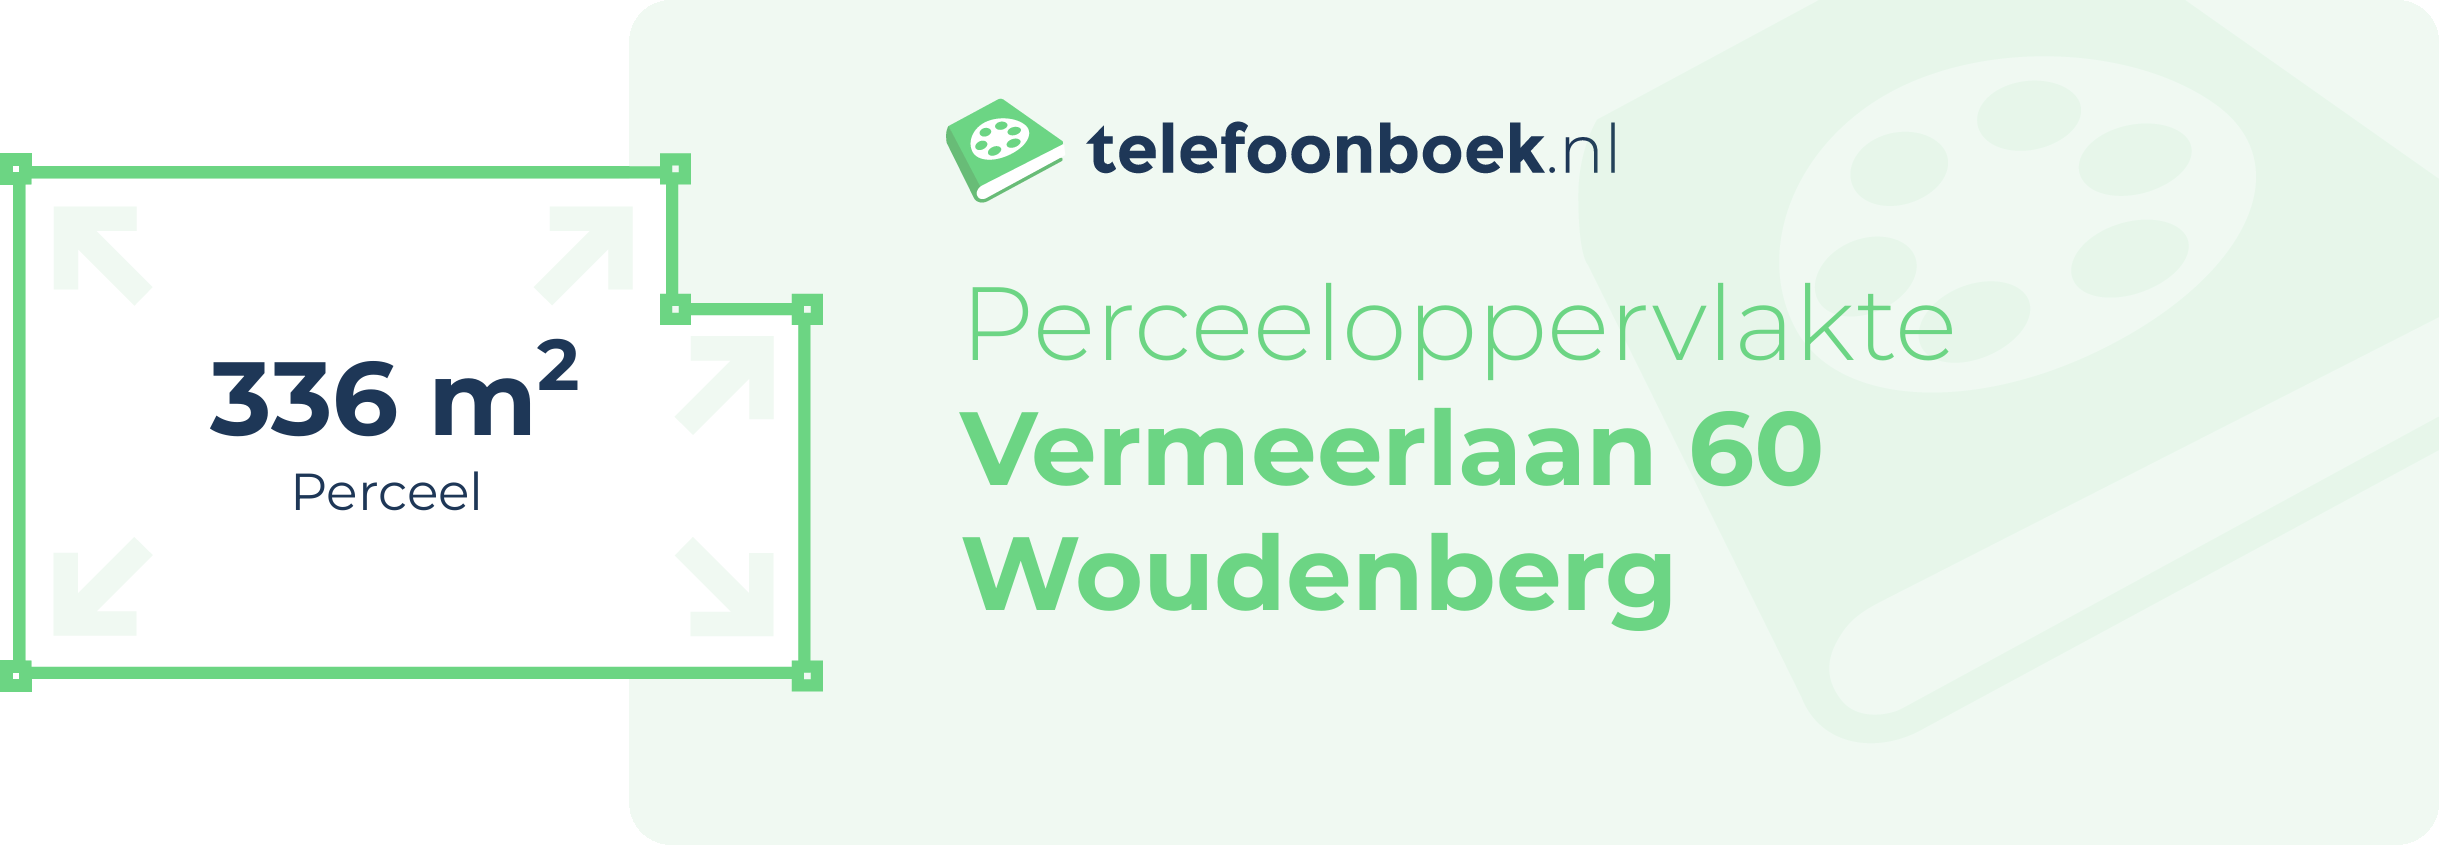 Perceeloppervlakte Vermeerlaan 60 Woudenberg